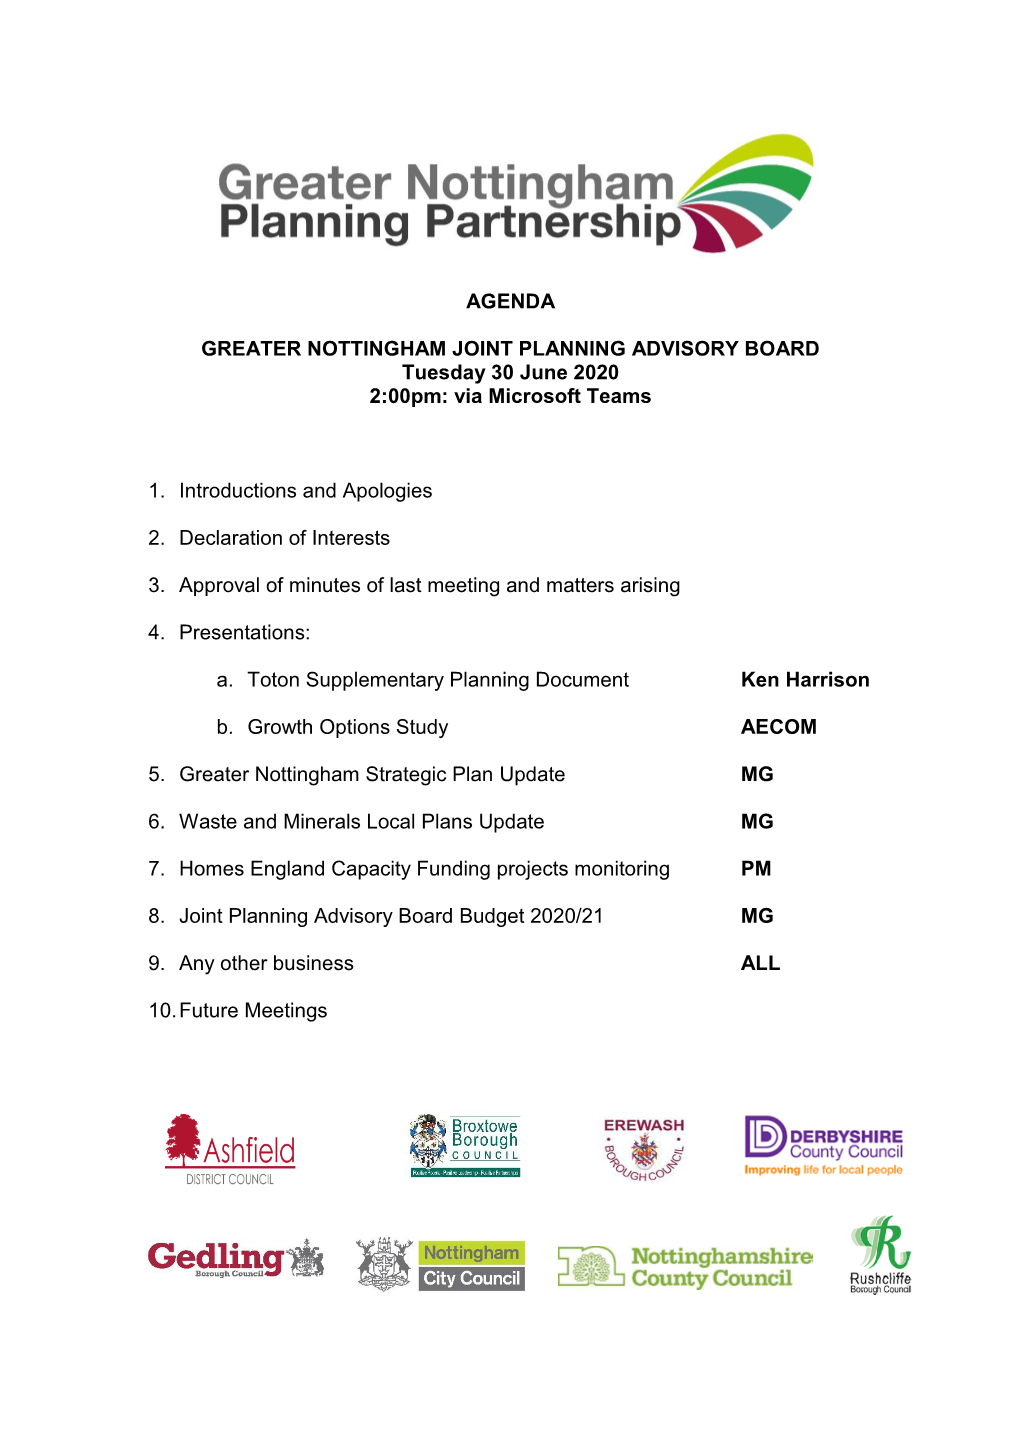 Agenda Greater Nottingham Joint Planning Advisory